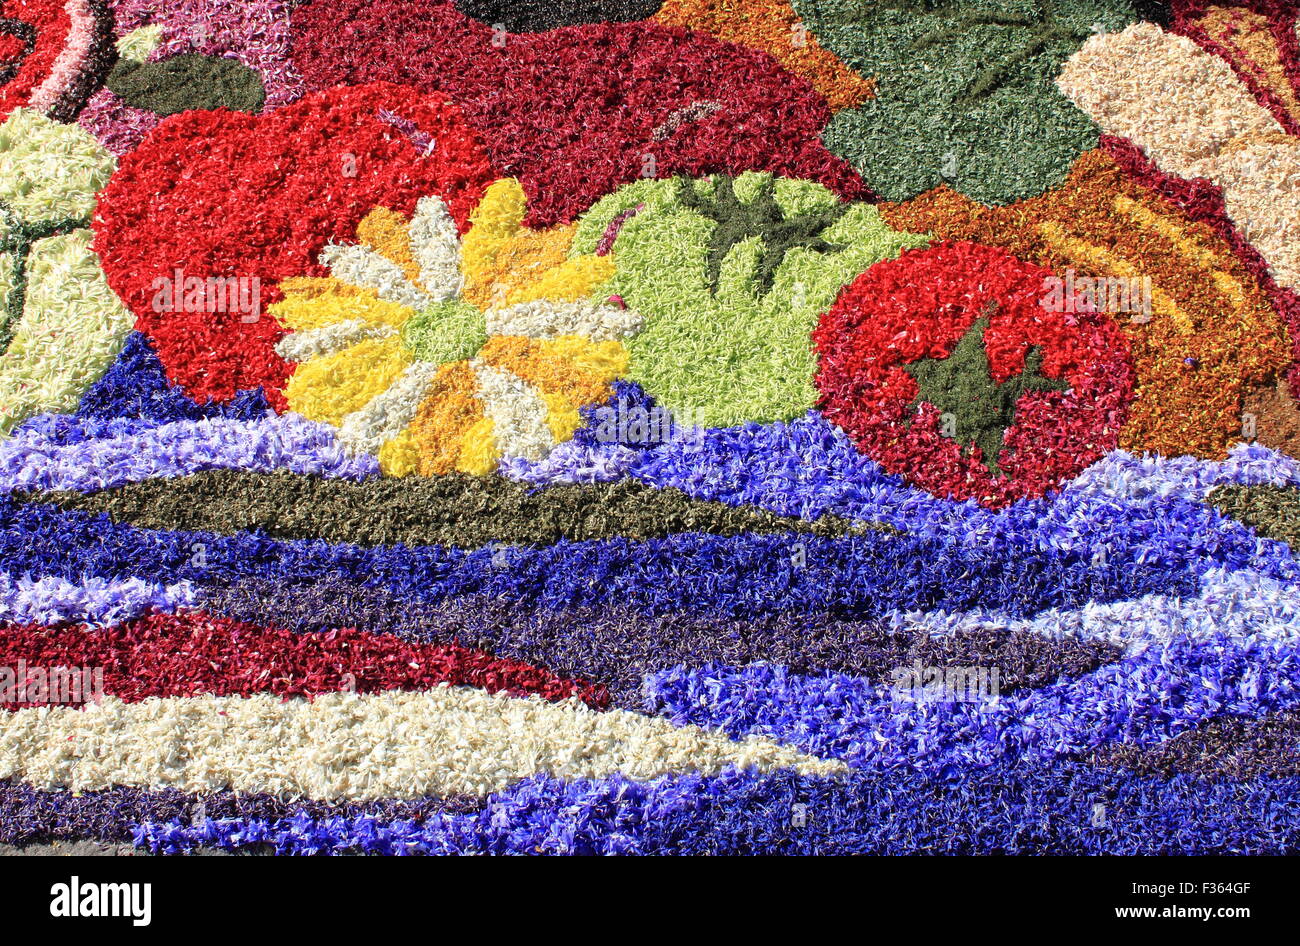 Tapis de fleurs multicolores faites de pétales de fleurs Banque D'Images